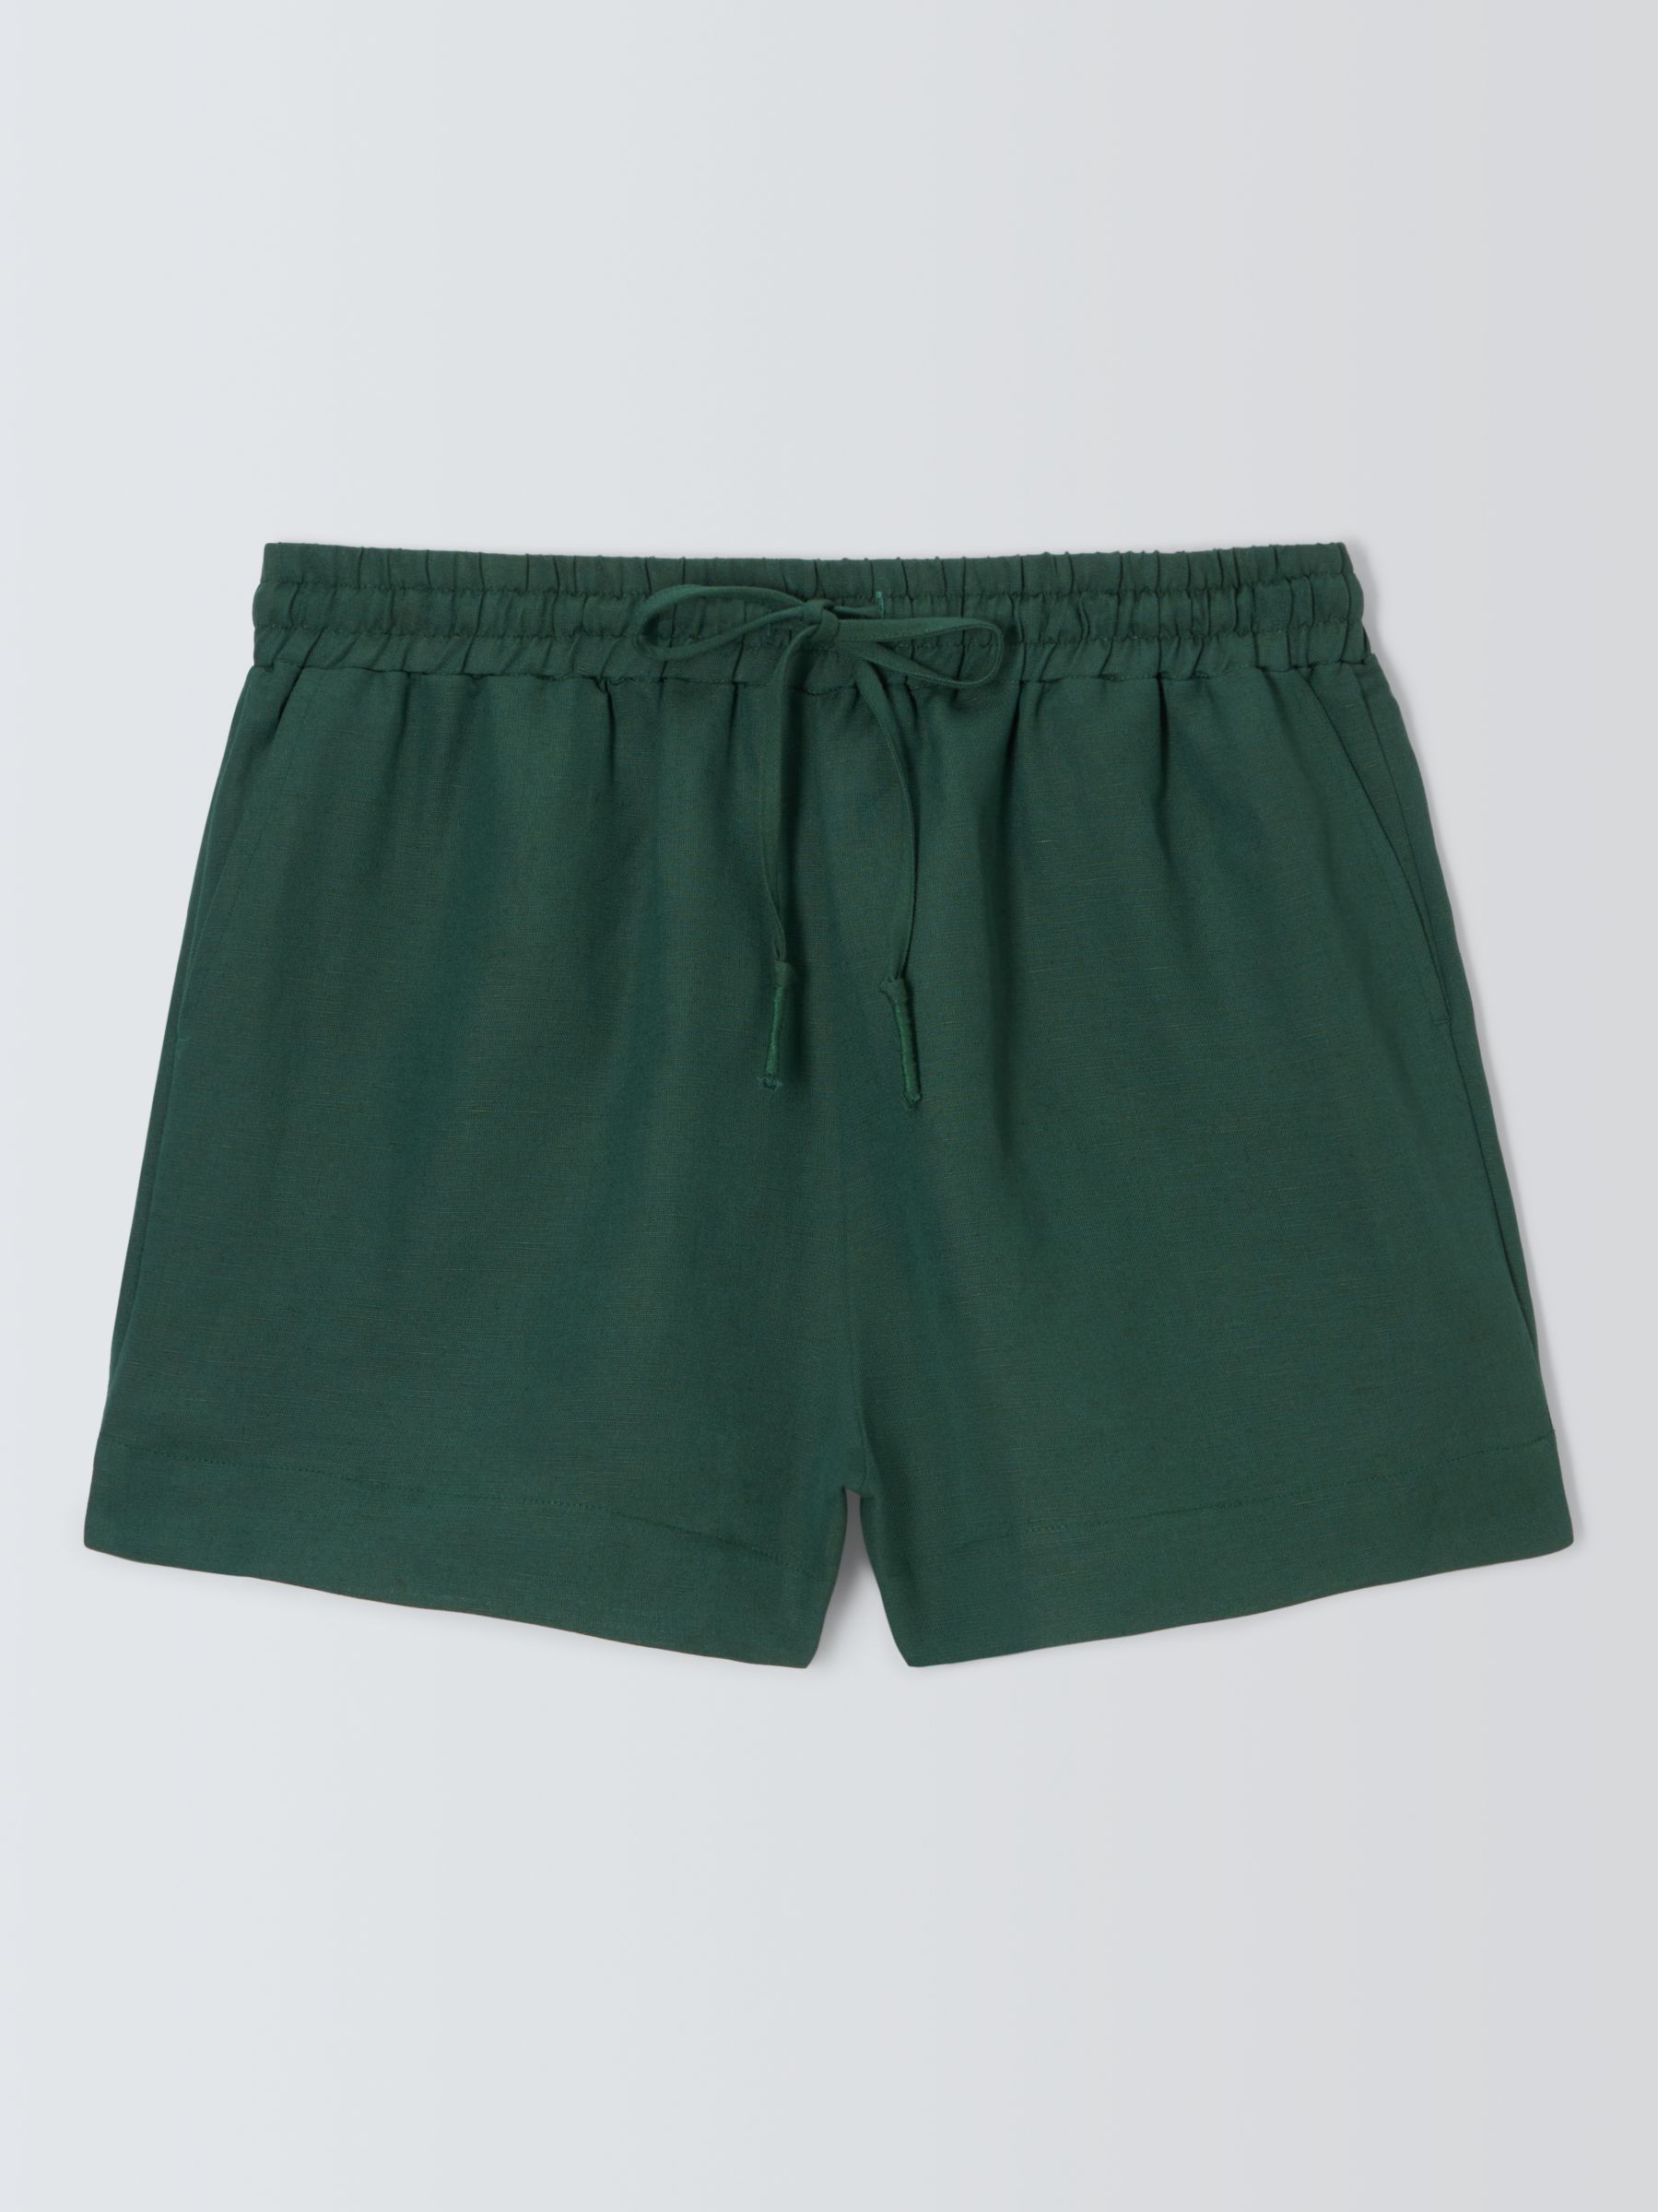 John Lewis Linen Blend Beach Shorts, Green, S